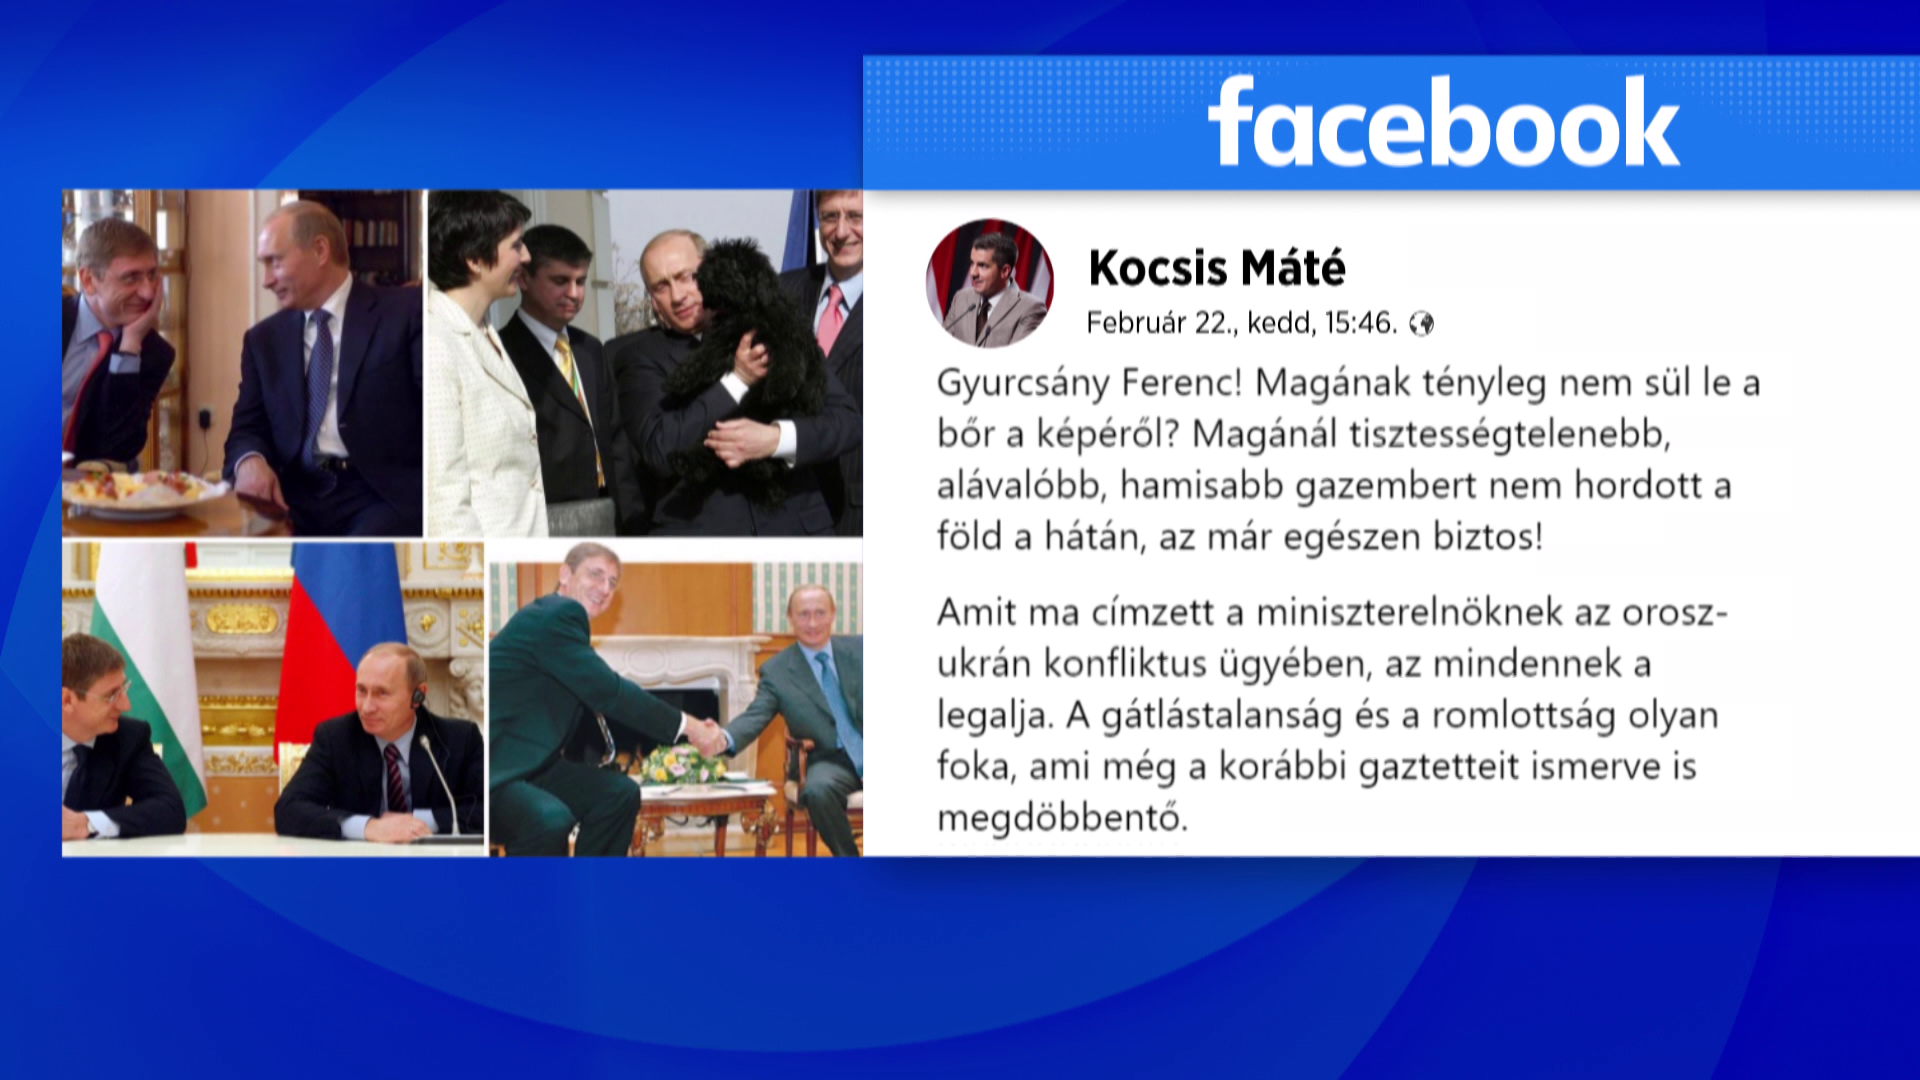 Közösségi oldalán szólt vissza Kocsis Máté Gyurcsány Ferencnek 